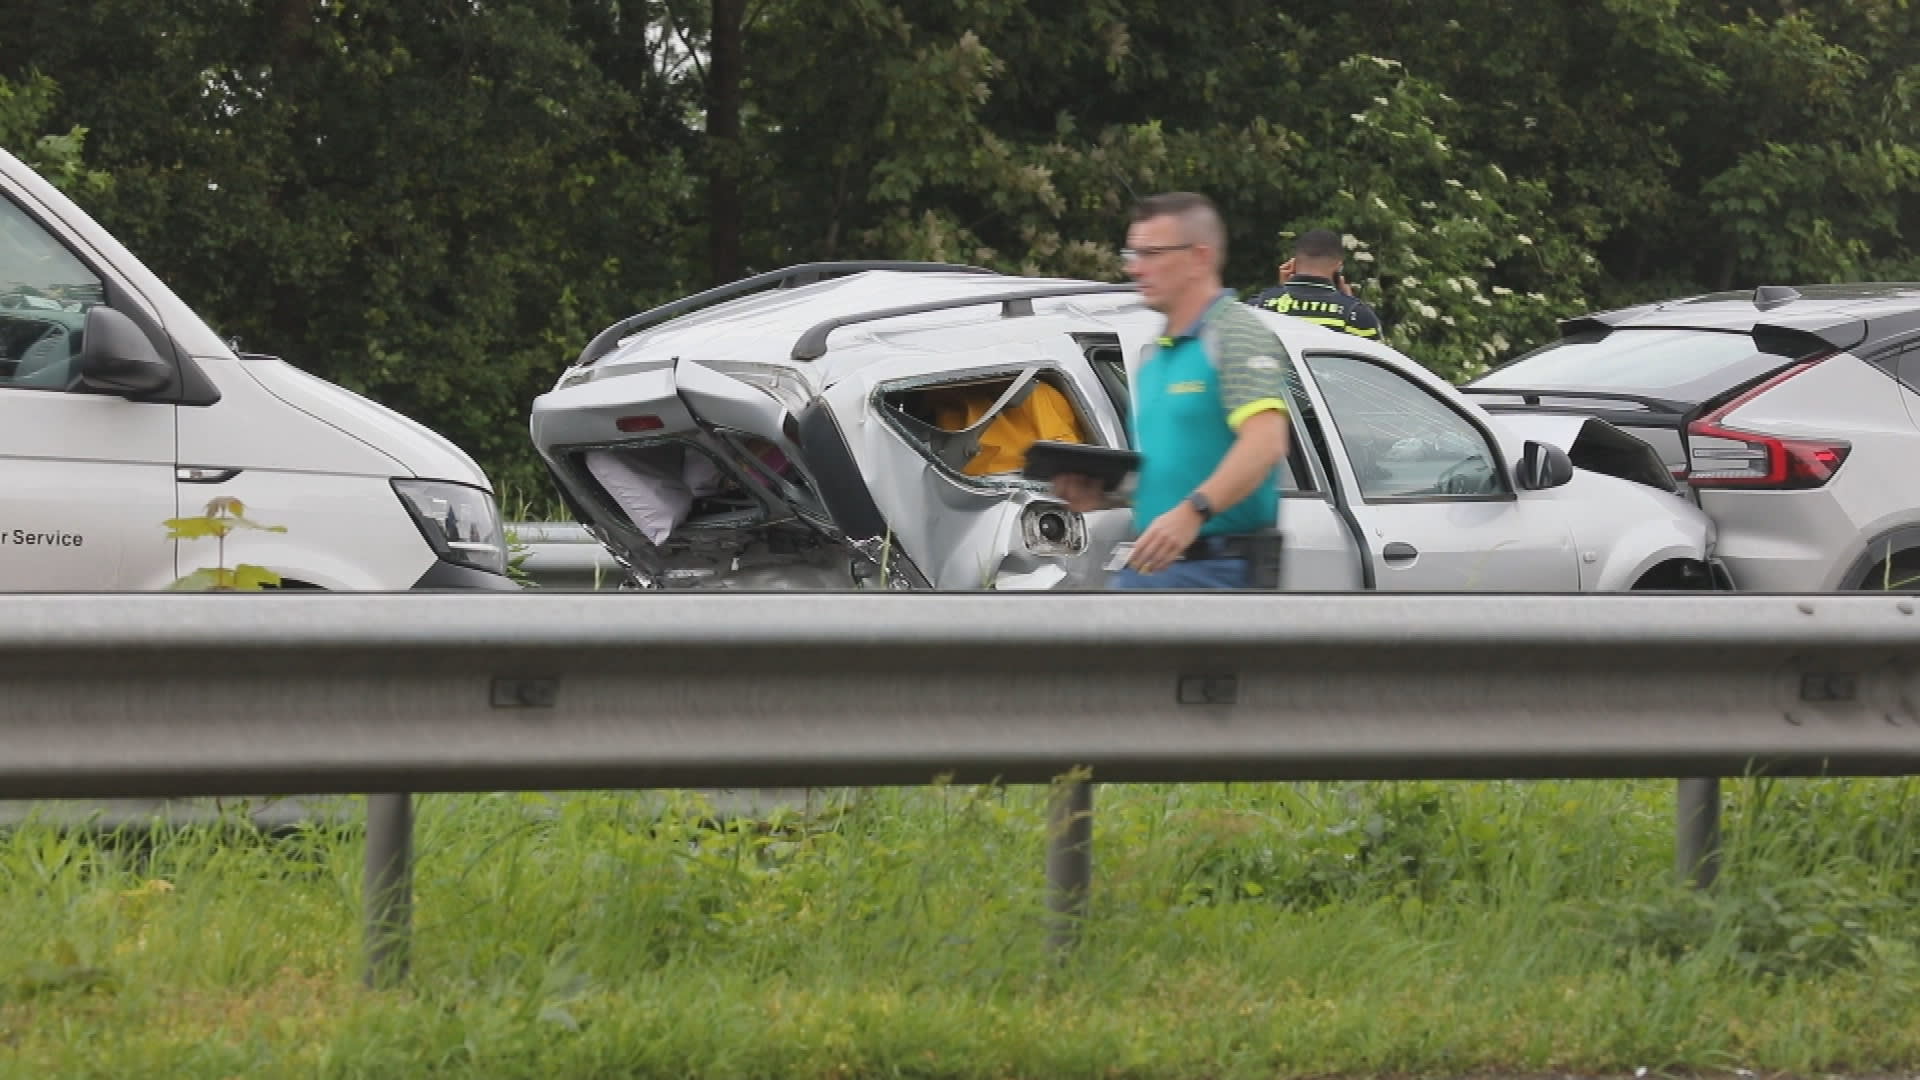 Ernstig ongeluk met meerdere auto's op A17 bij Roosendaal, gewonden naar ziekenhuis